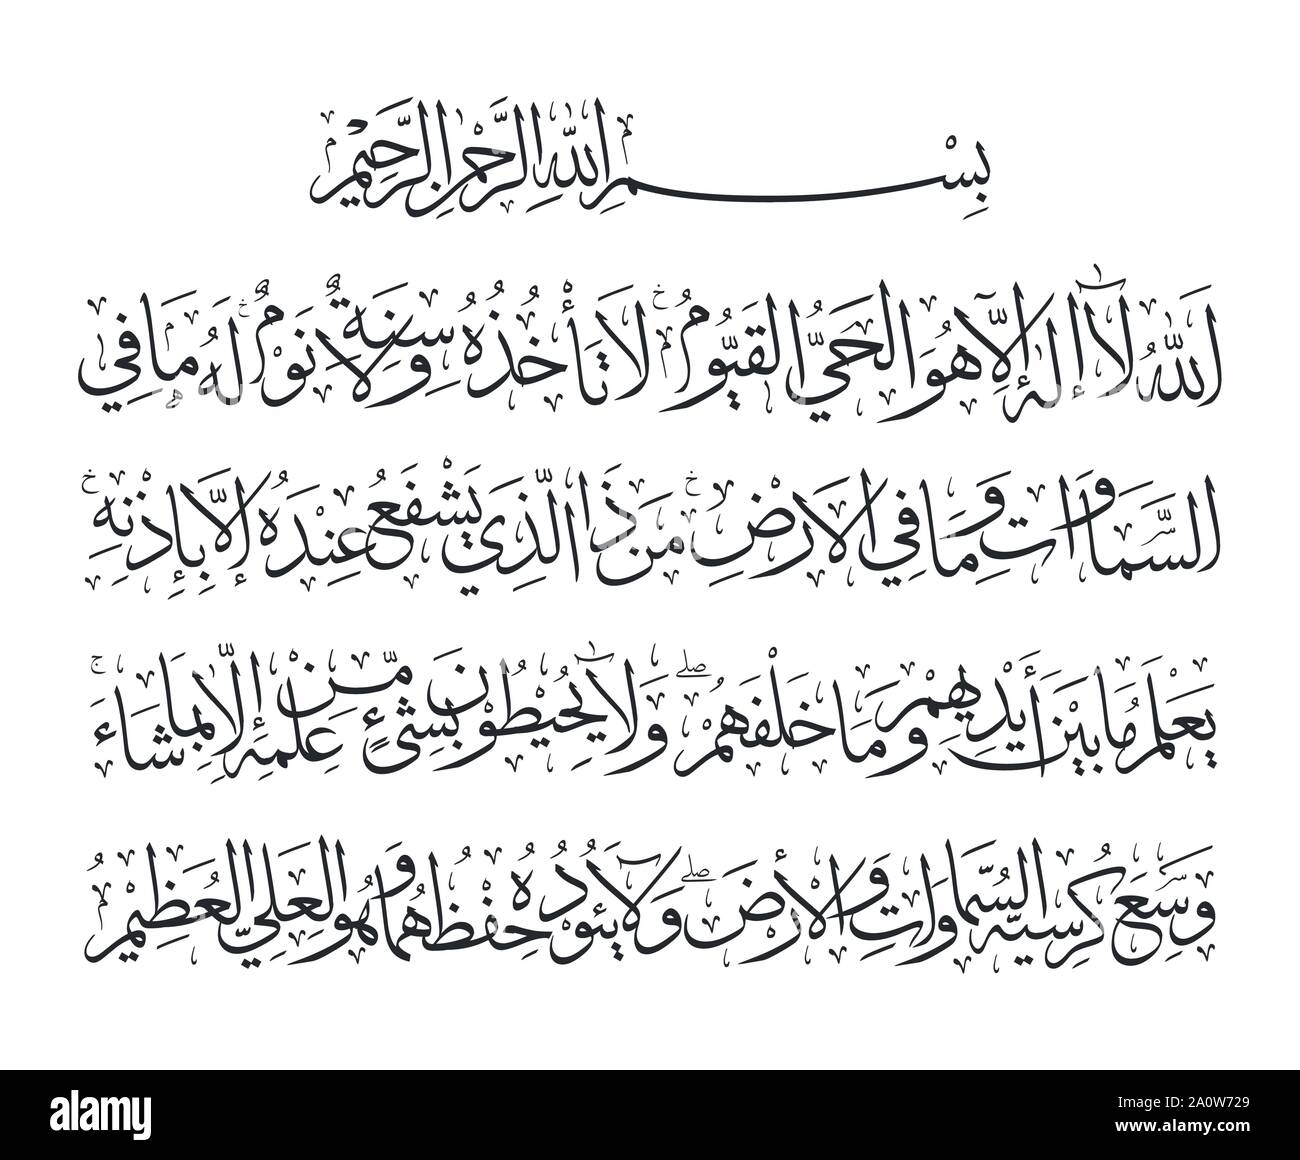 Ayatolul Kursi/verset du Trône (Chapitre 2 d'Al-Coran/Sura Al-Baqarah verset 255). Les musulmans lisent habituellement le verset après chaque 5 fois la prière et quand le th Illustration de Vecteur